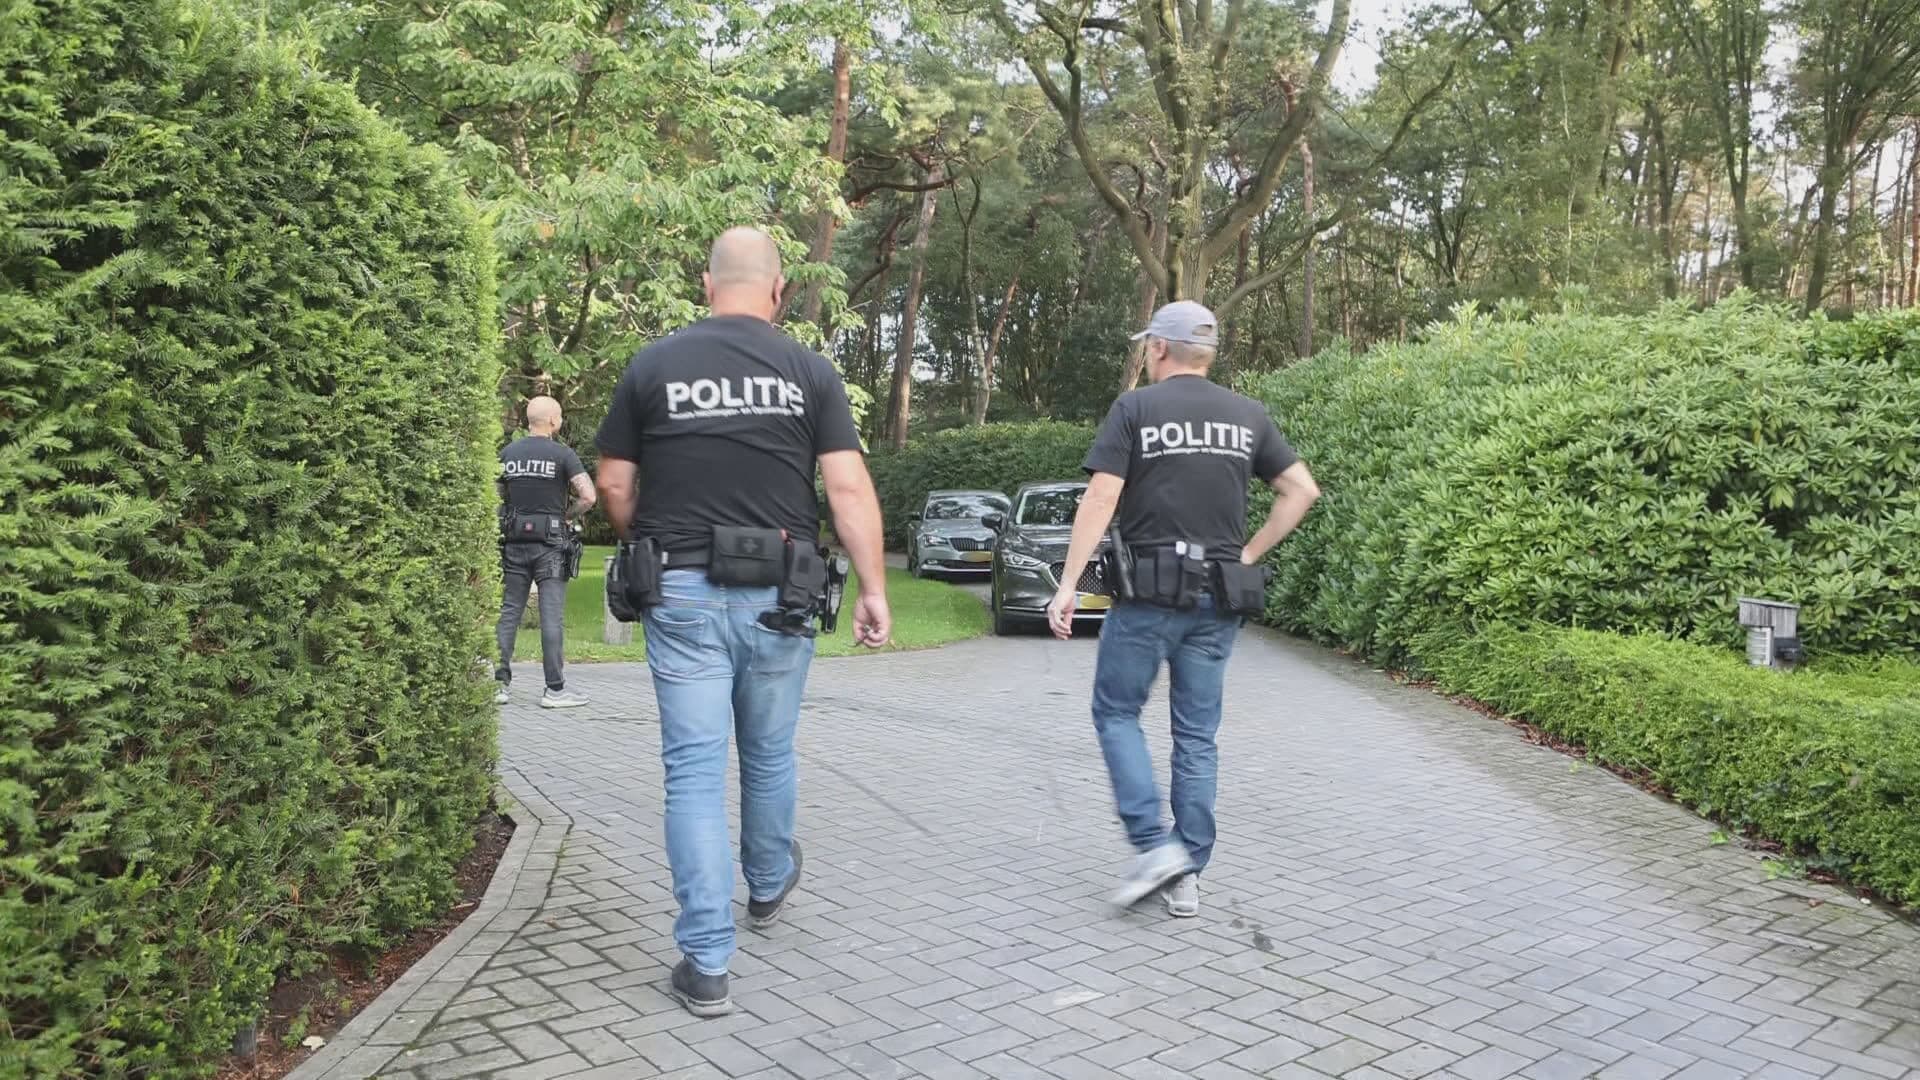 Politie en FIOD vallen huis binnen van Jumbo-topman Frits van Eerd in grote witwaszaak